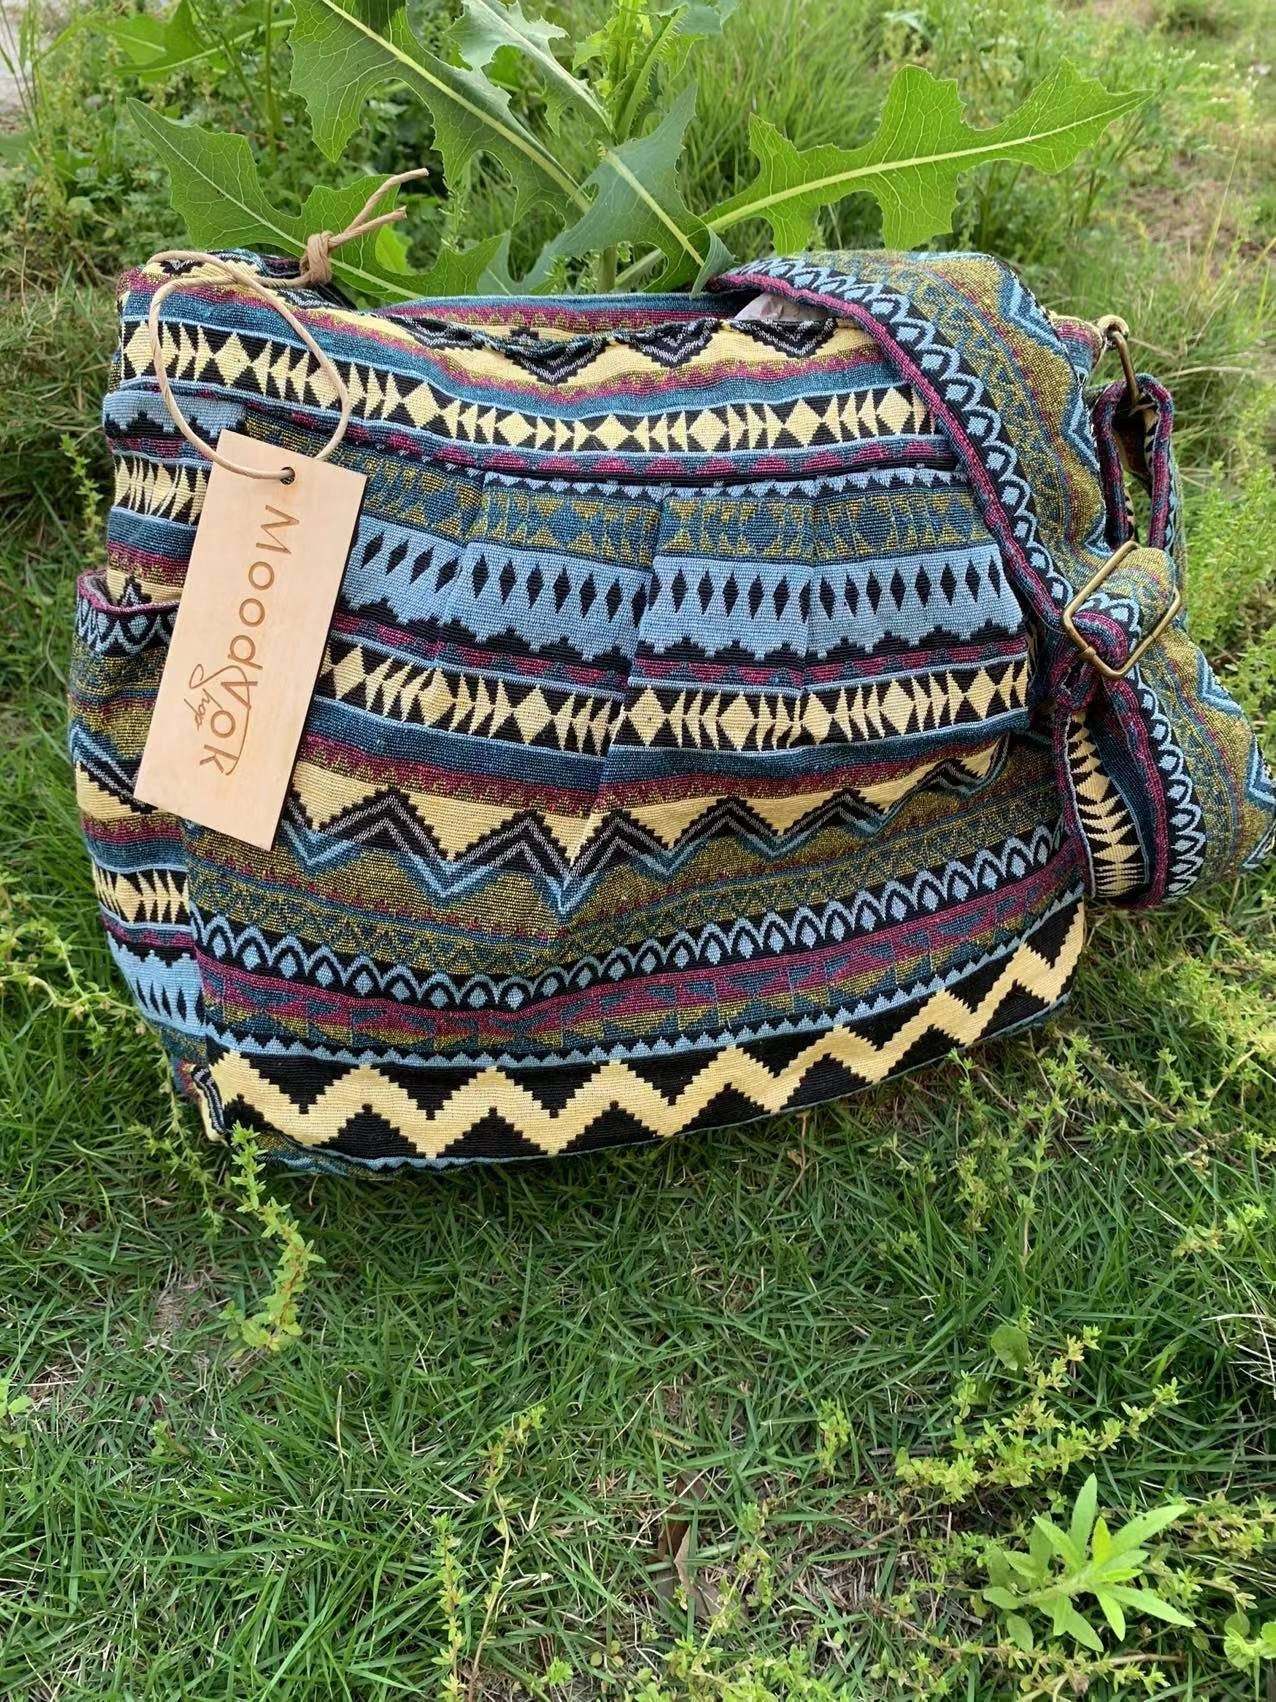 Hippie Leather Shoulder Bag - Brown Caramel | Fringe Bag by Moroccan Corridor